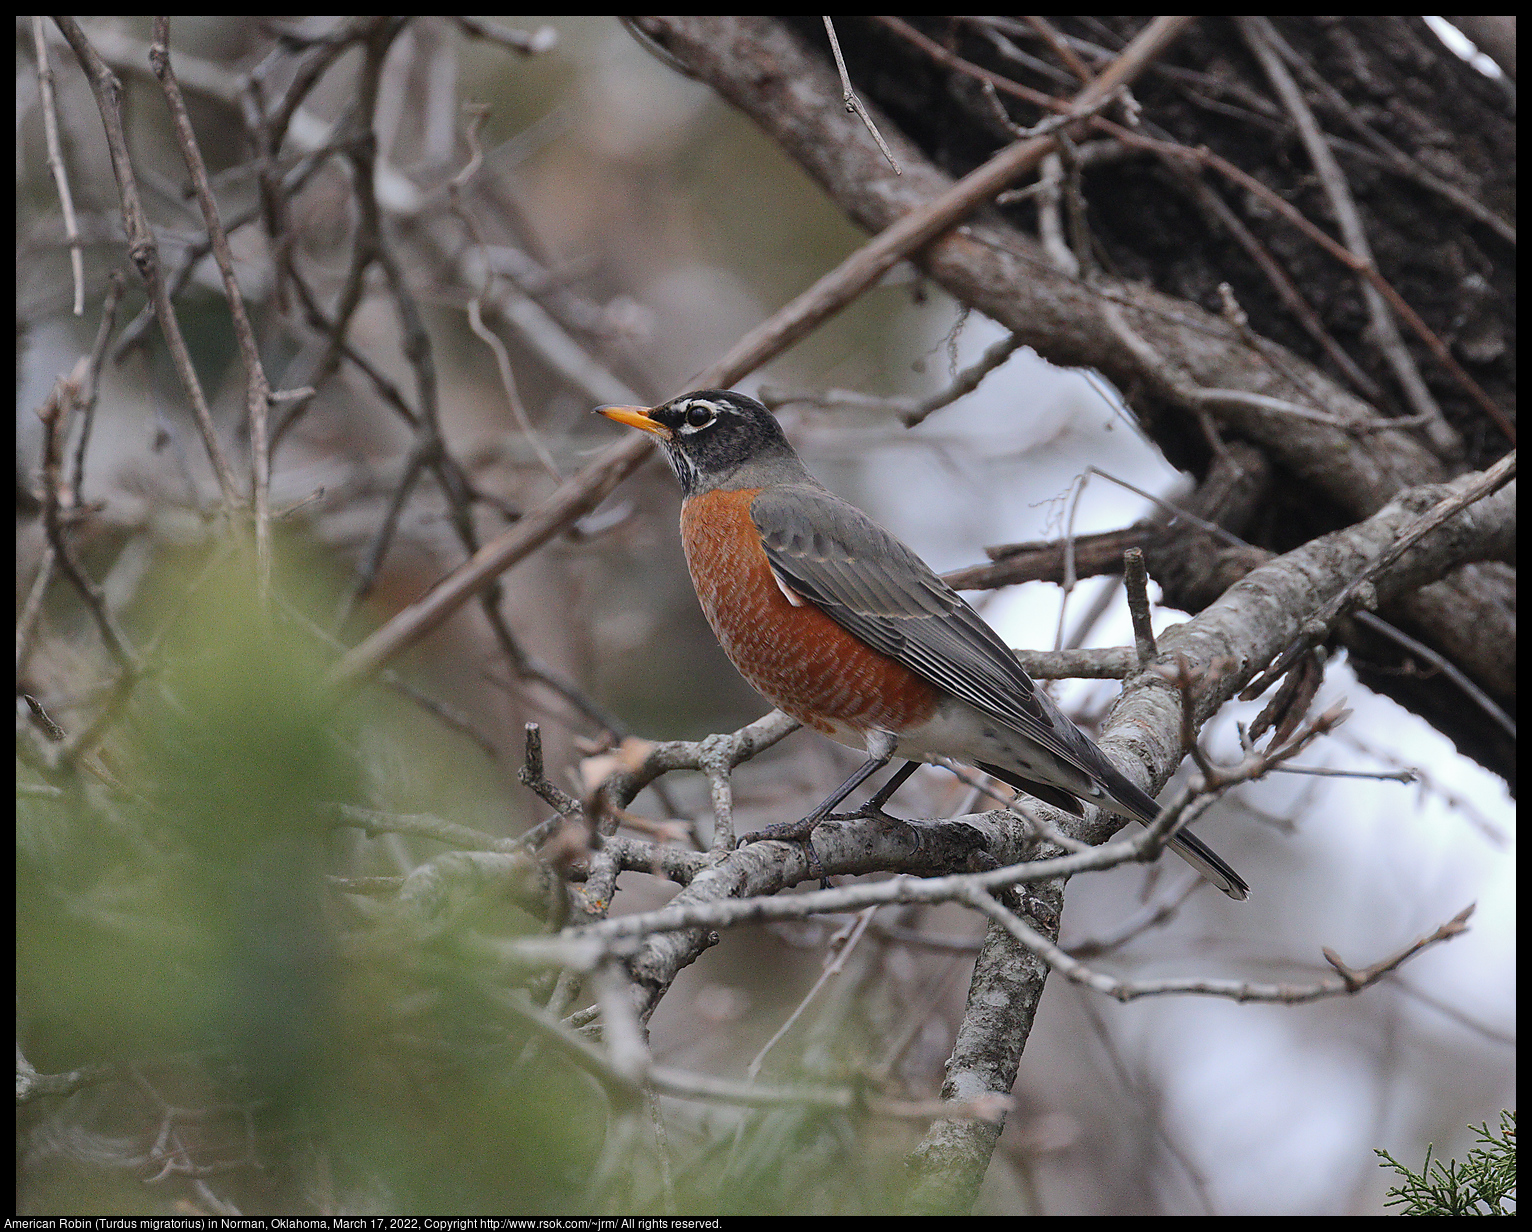 American Robin (Turdus migratorius) in Norman, Oklahoma, March 17, 2022